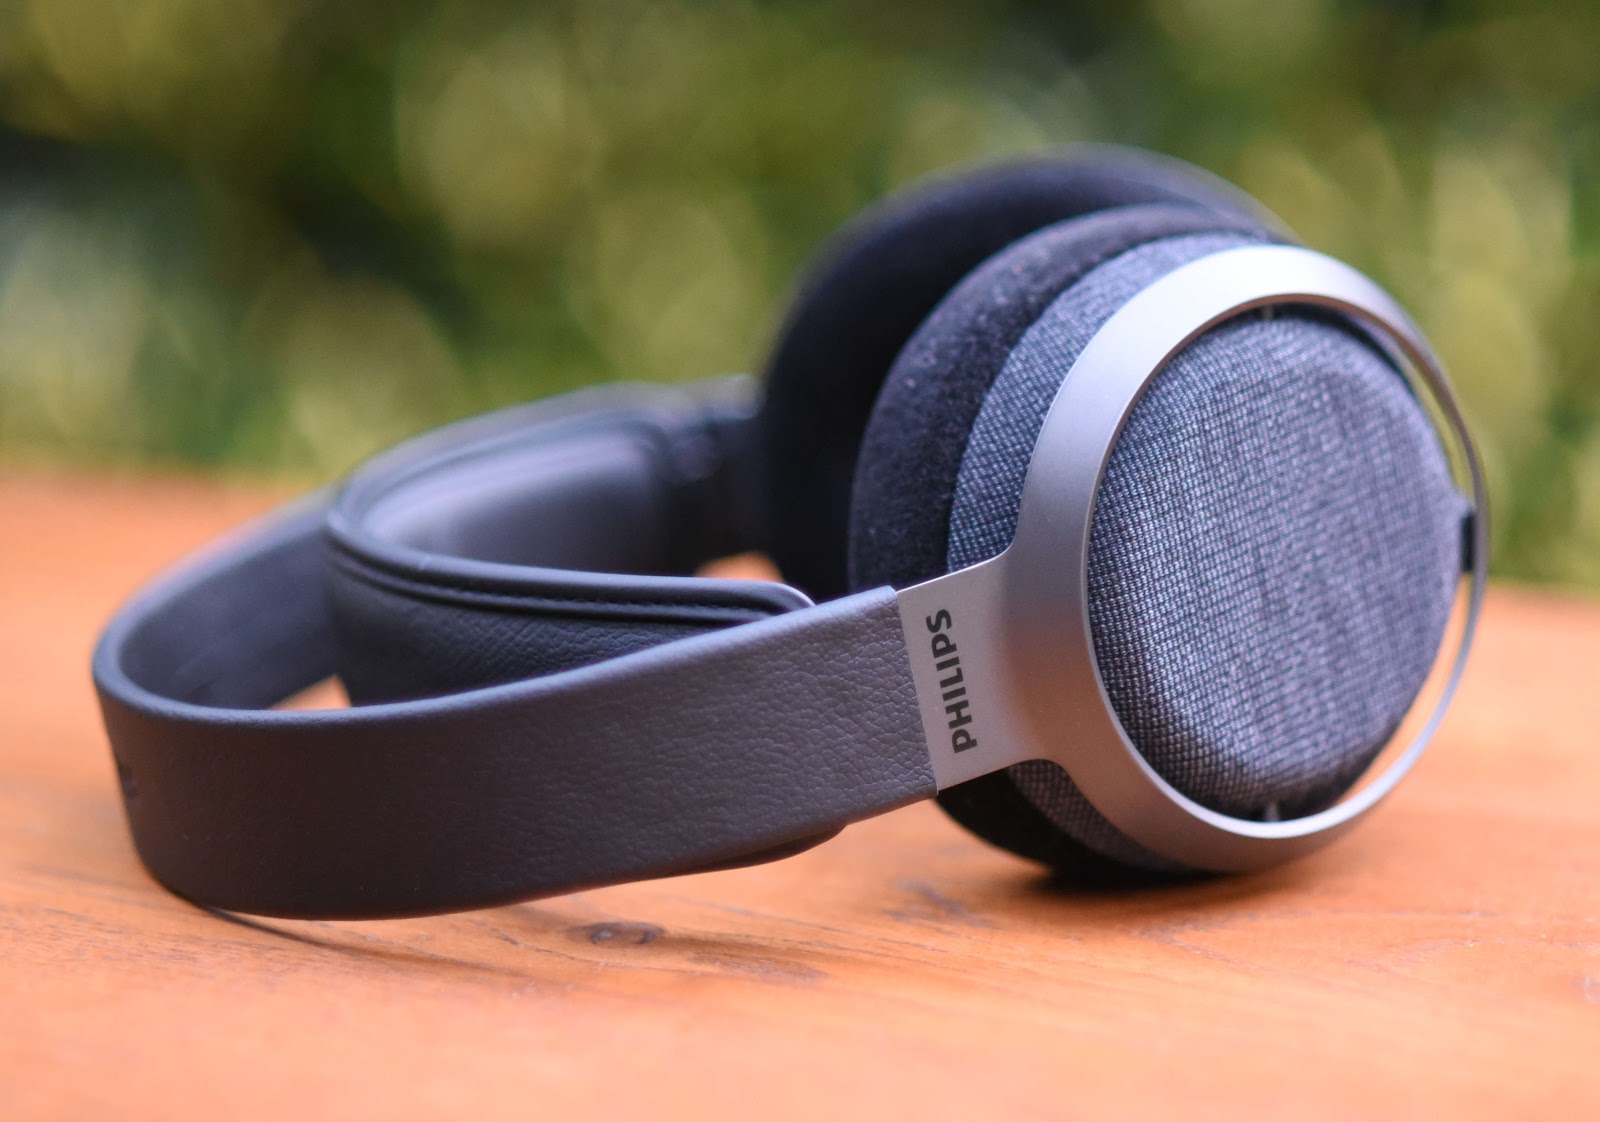 Philips Fidelio X3 Headphones Review